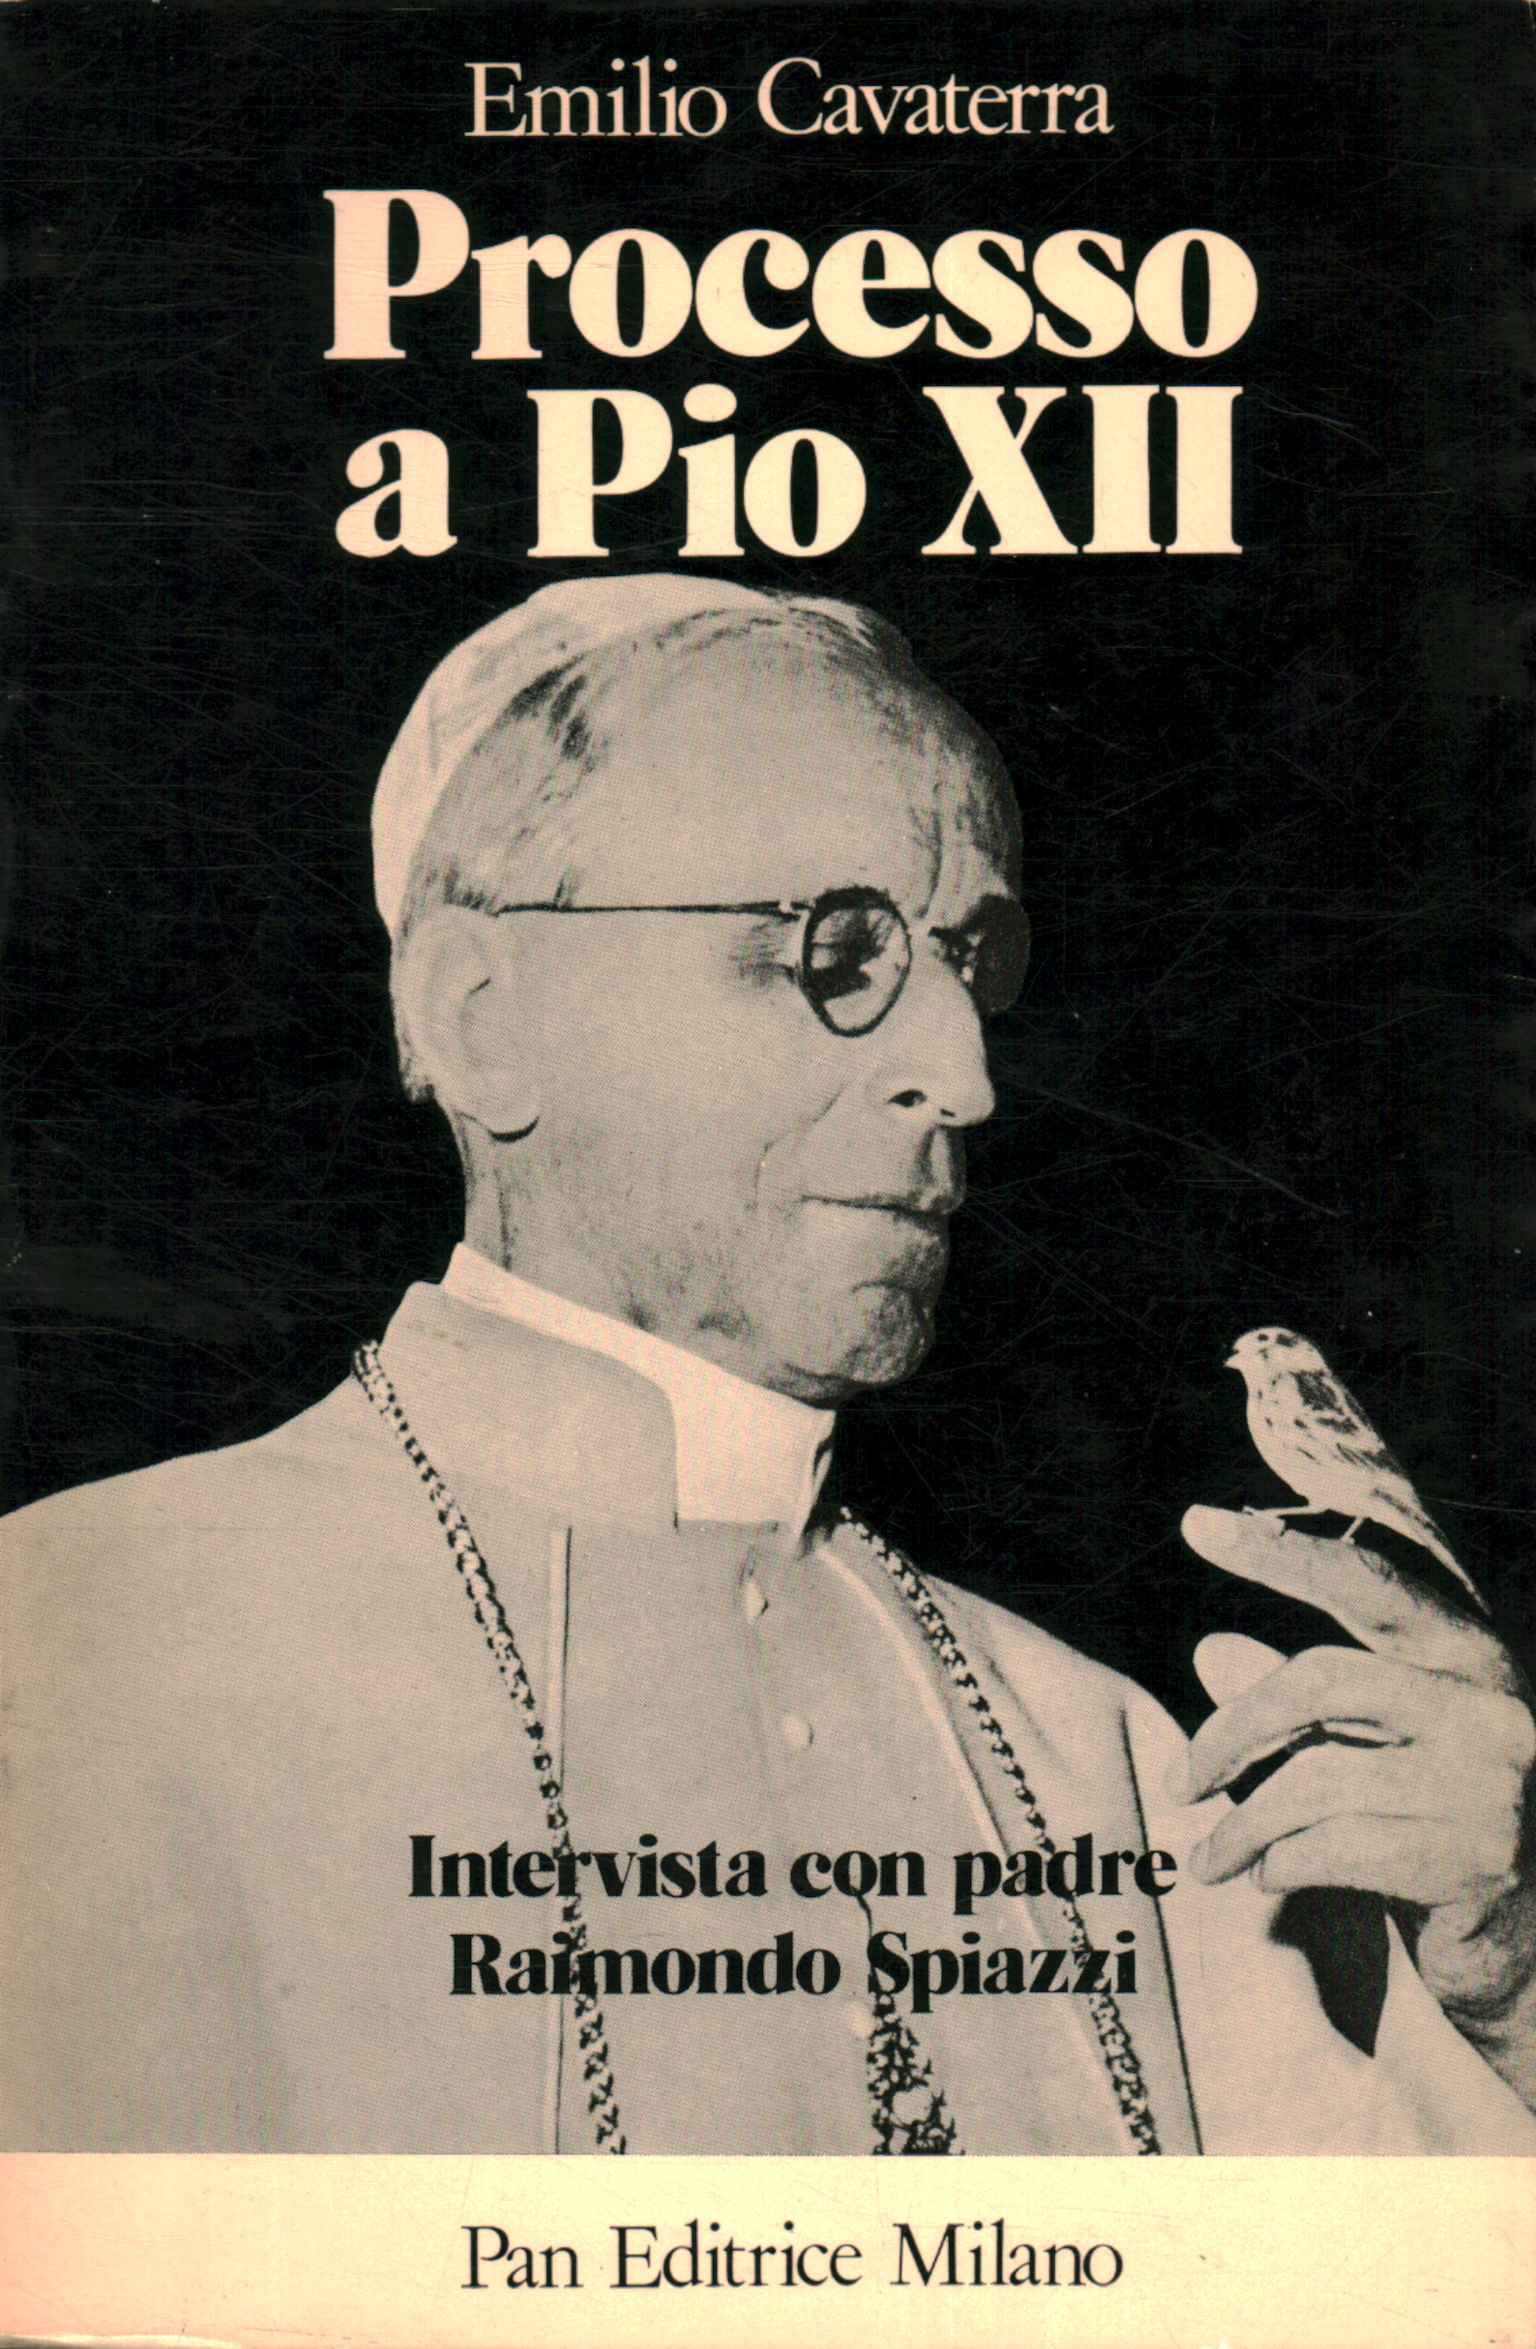 Juicio a Pío XII